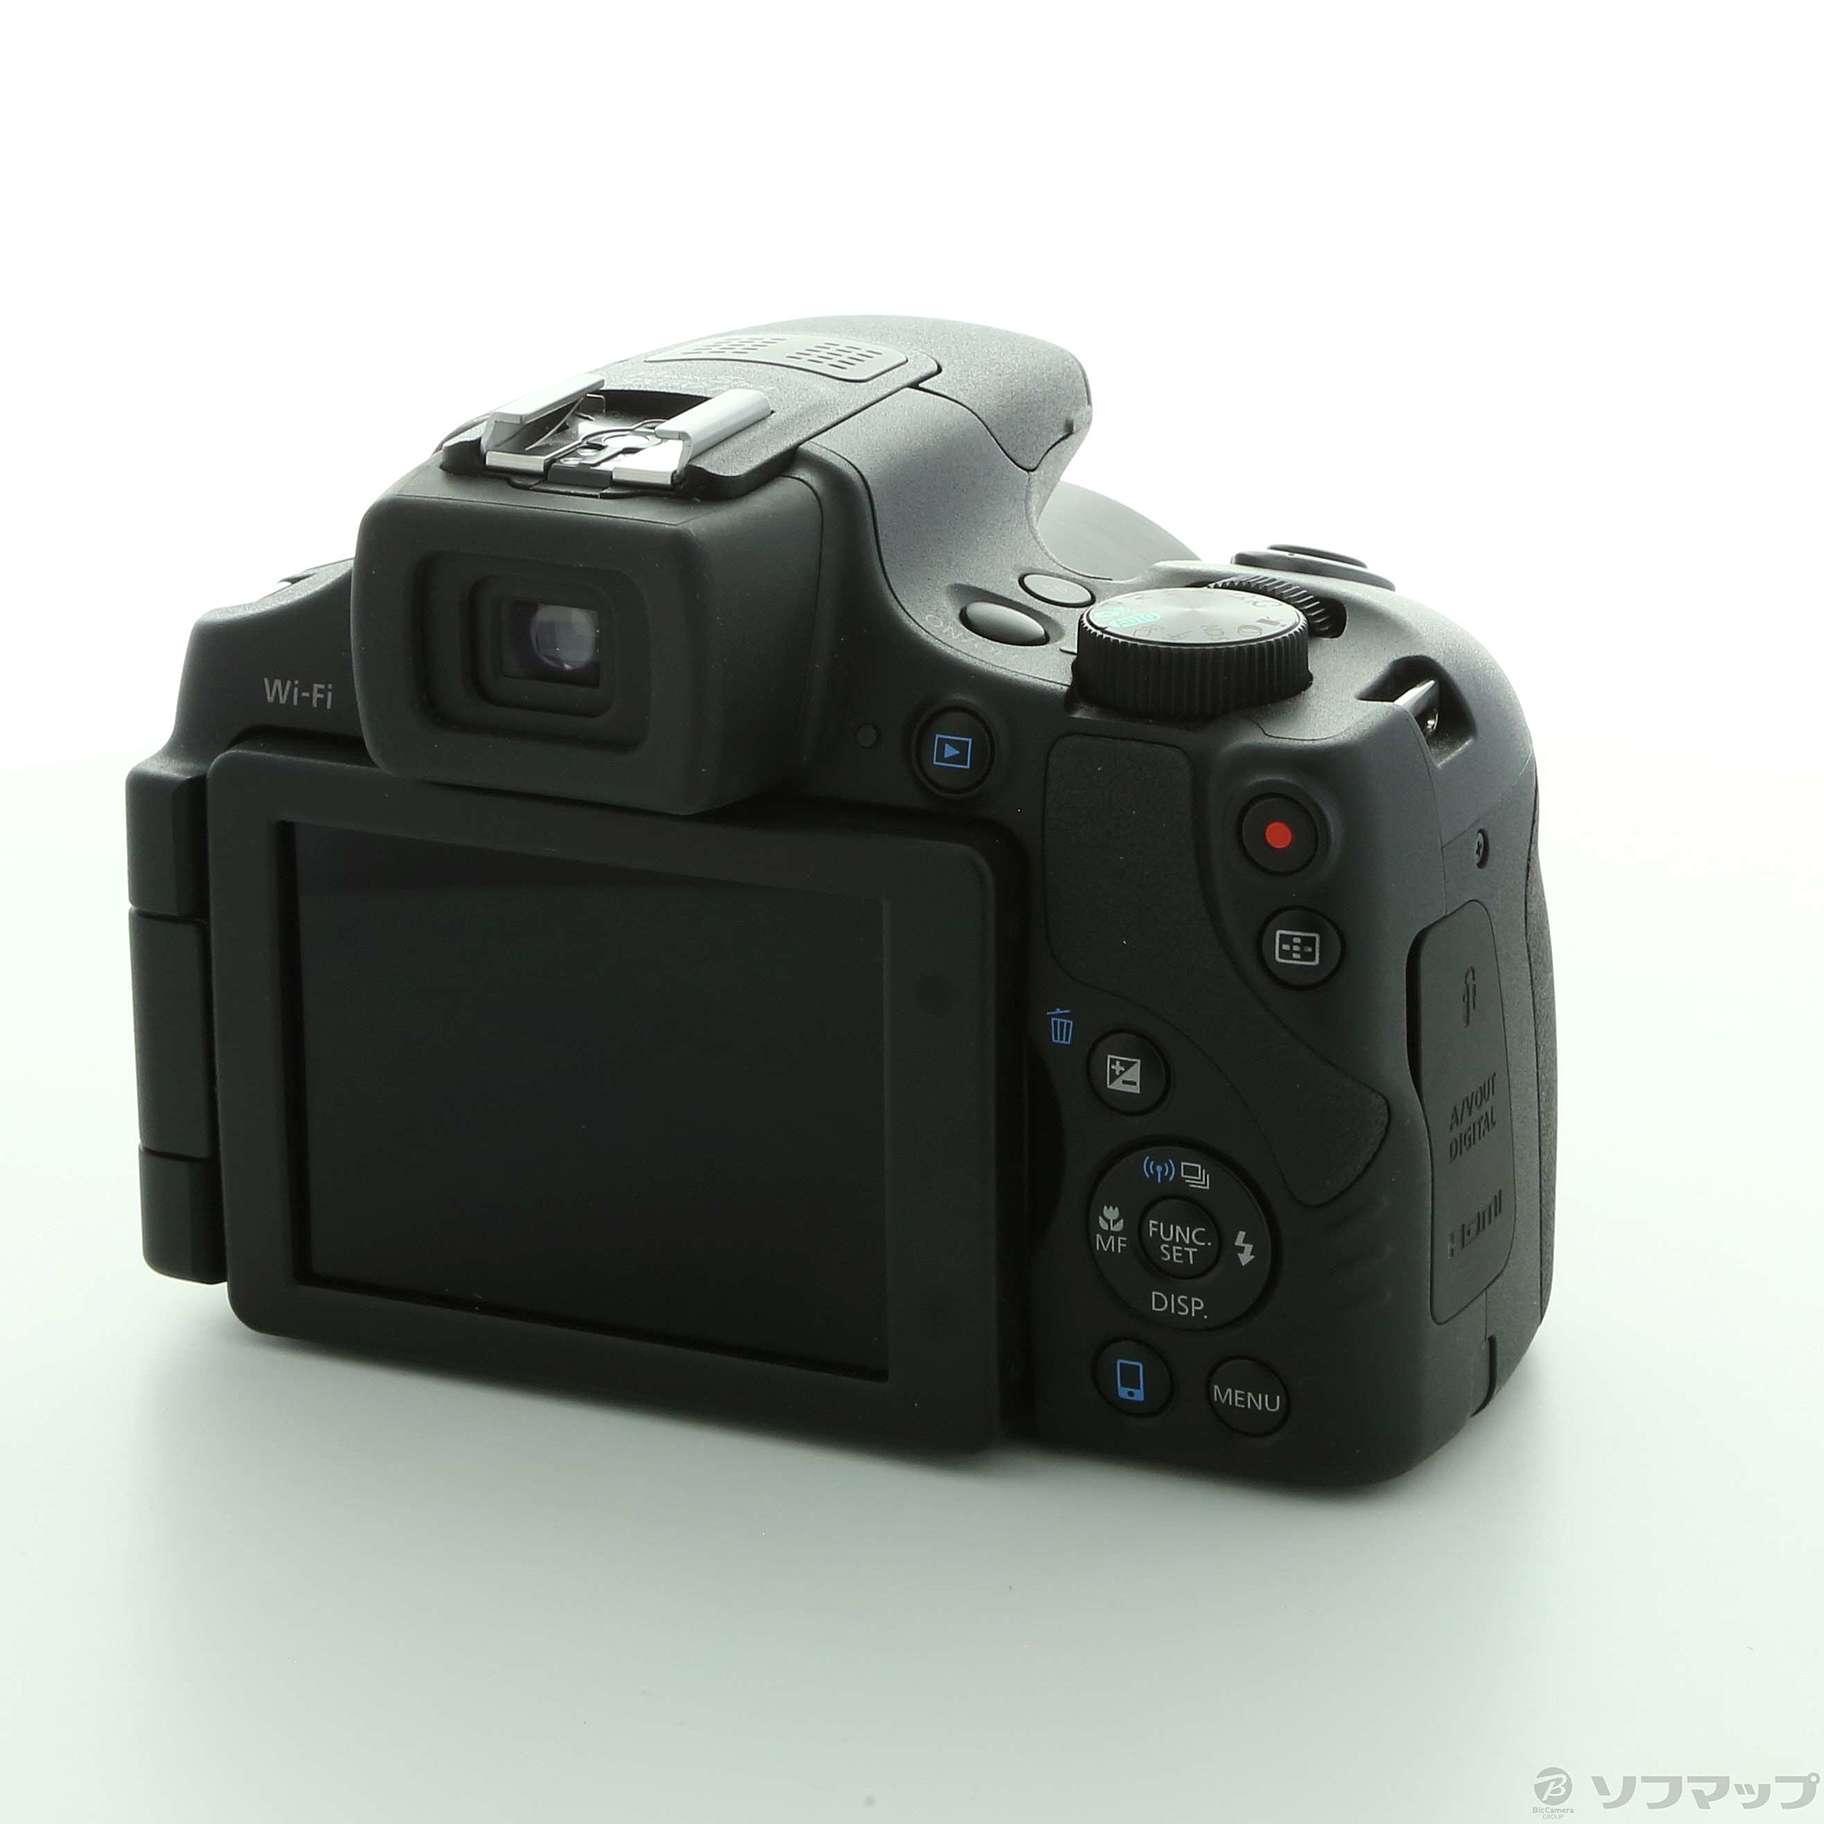 キヤノン PowerShot SX60 HS デジタルカメラ Wi-Fi搭載